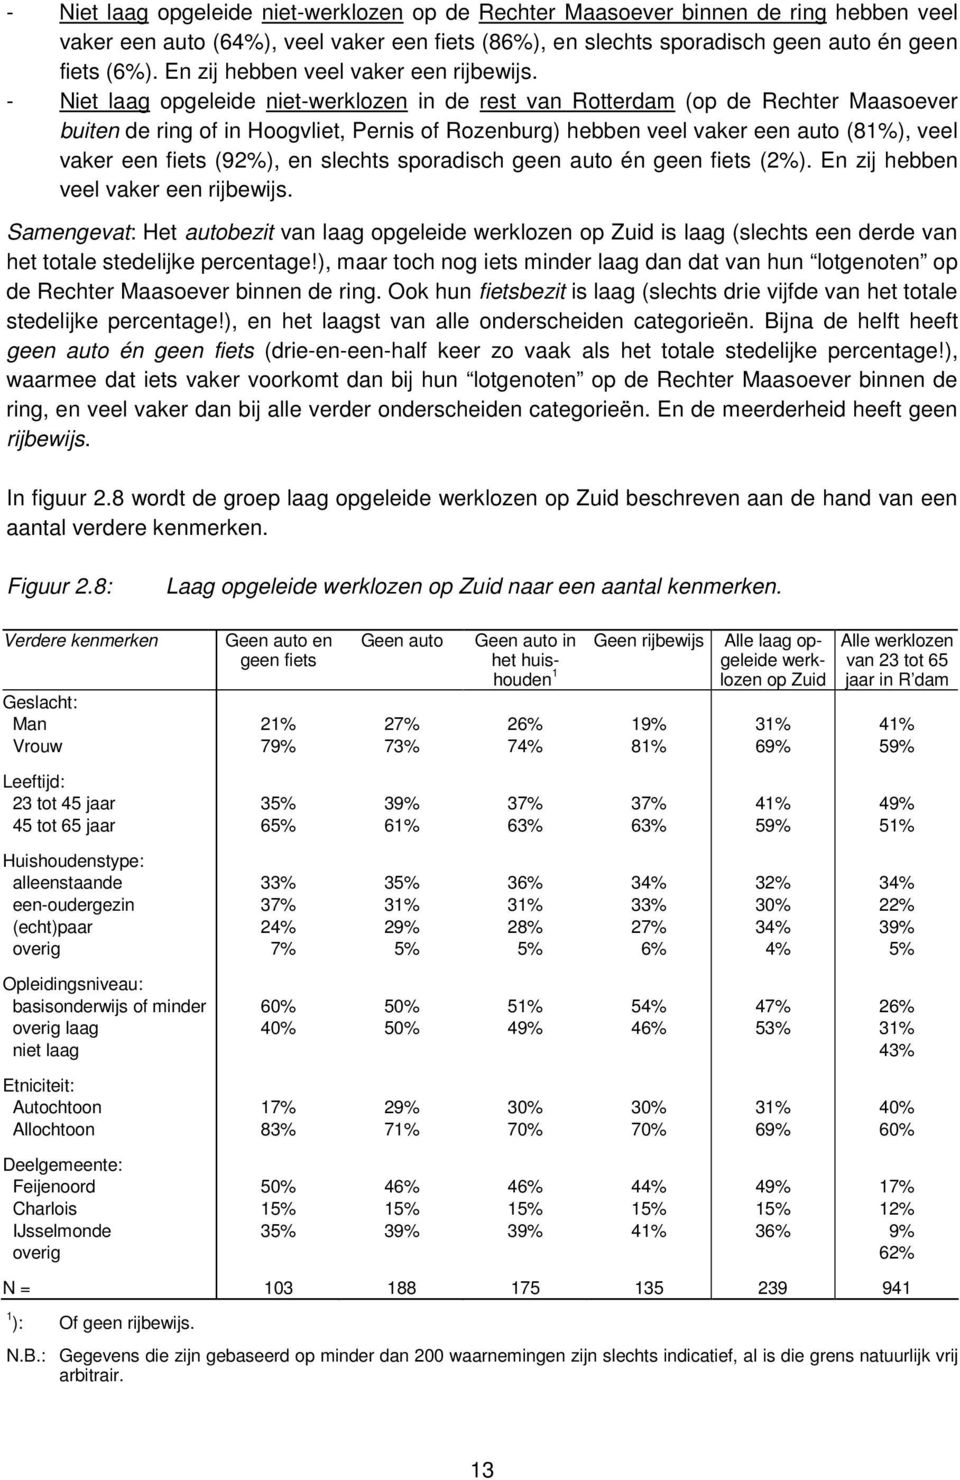 - Niet laag opgeleide niet-werklozen in de rest van Rotterdam (op de Rechter Maasoever buiten de ring of in Hoogvliet, Pernis of Rozenburg) hebben veel vaker een auto (81%), veel vaker een fiets